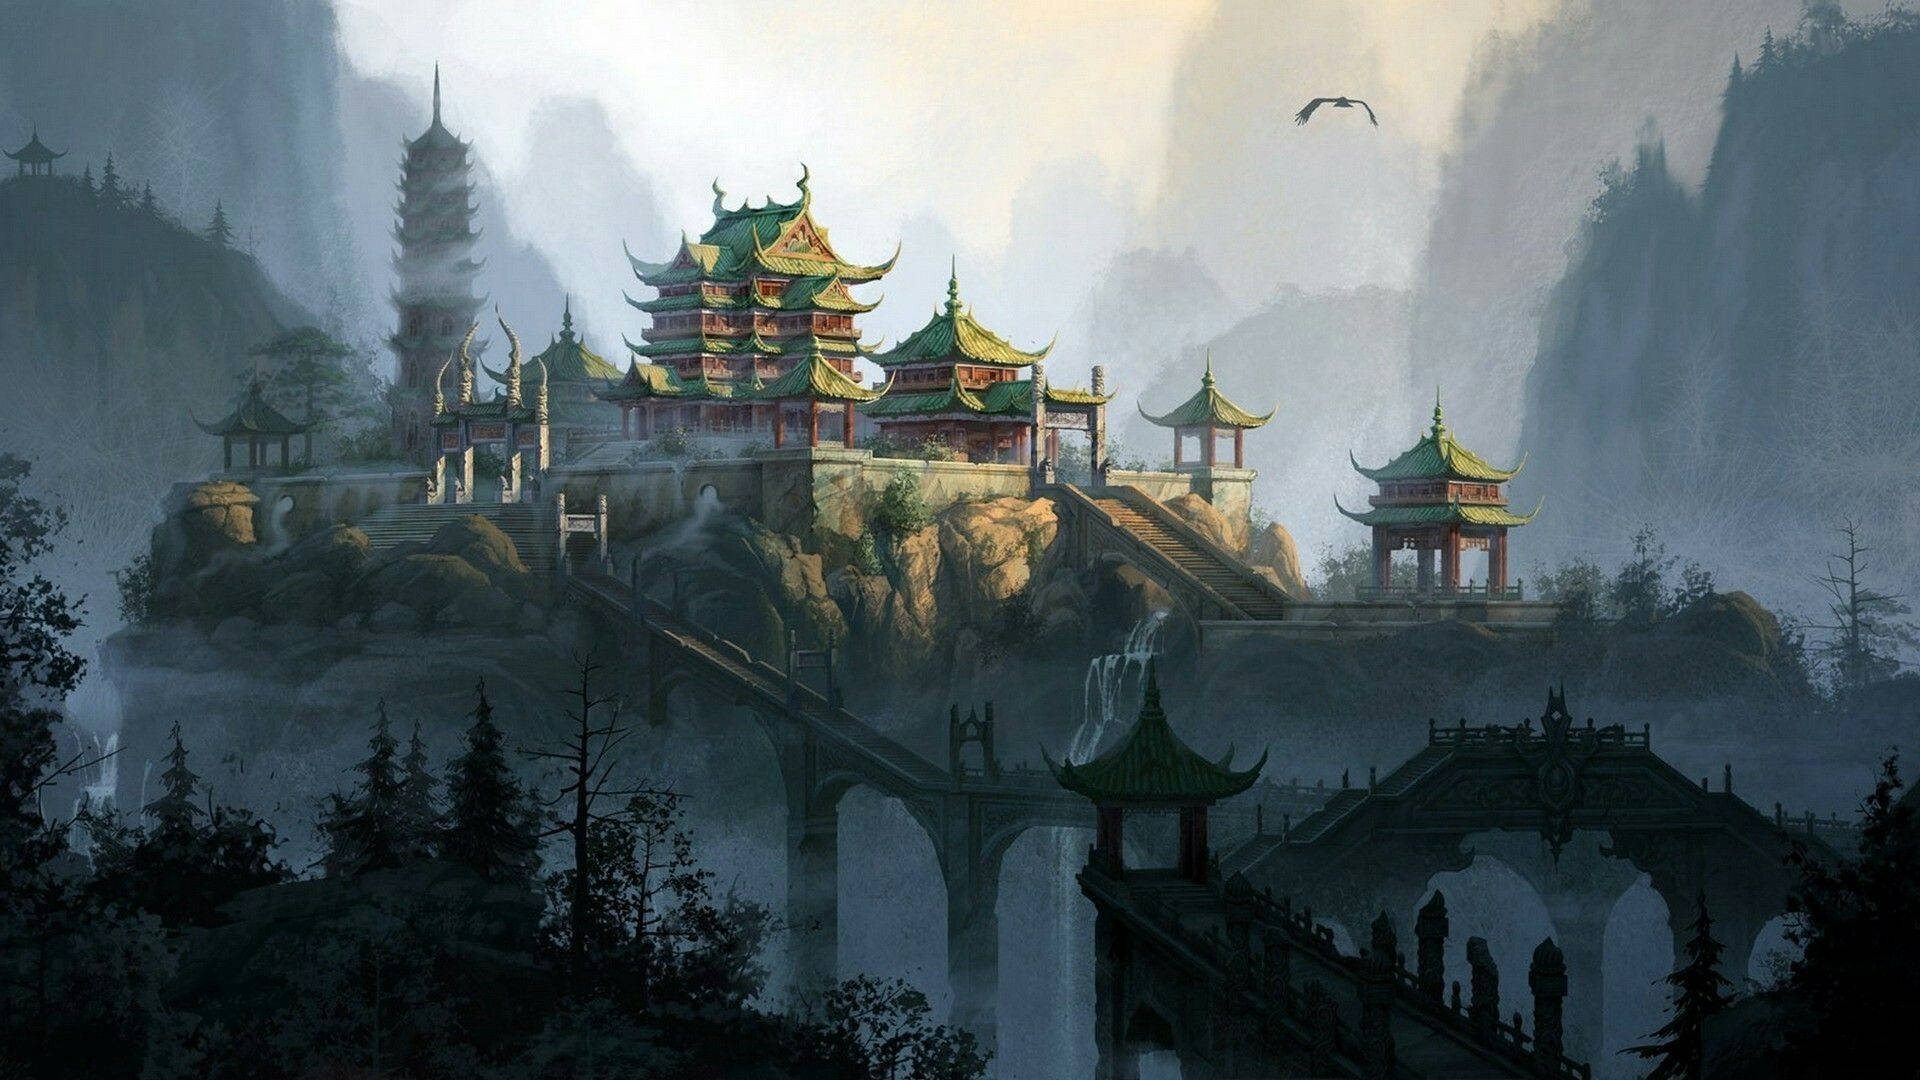 Chinatown Landscape Art Background